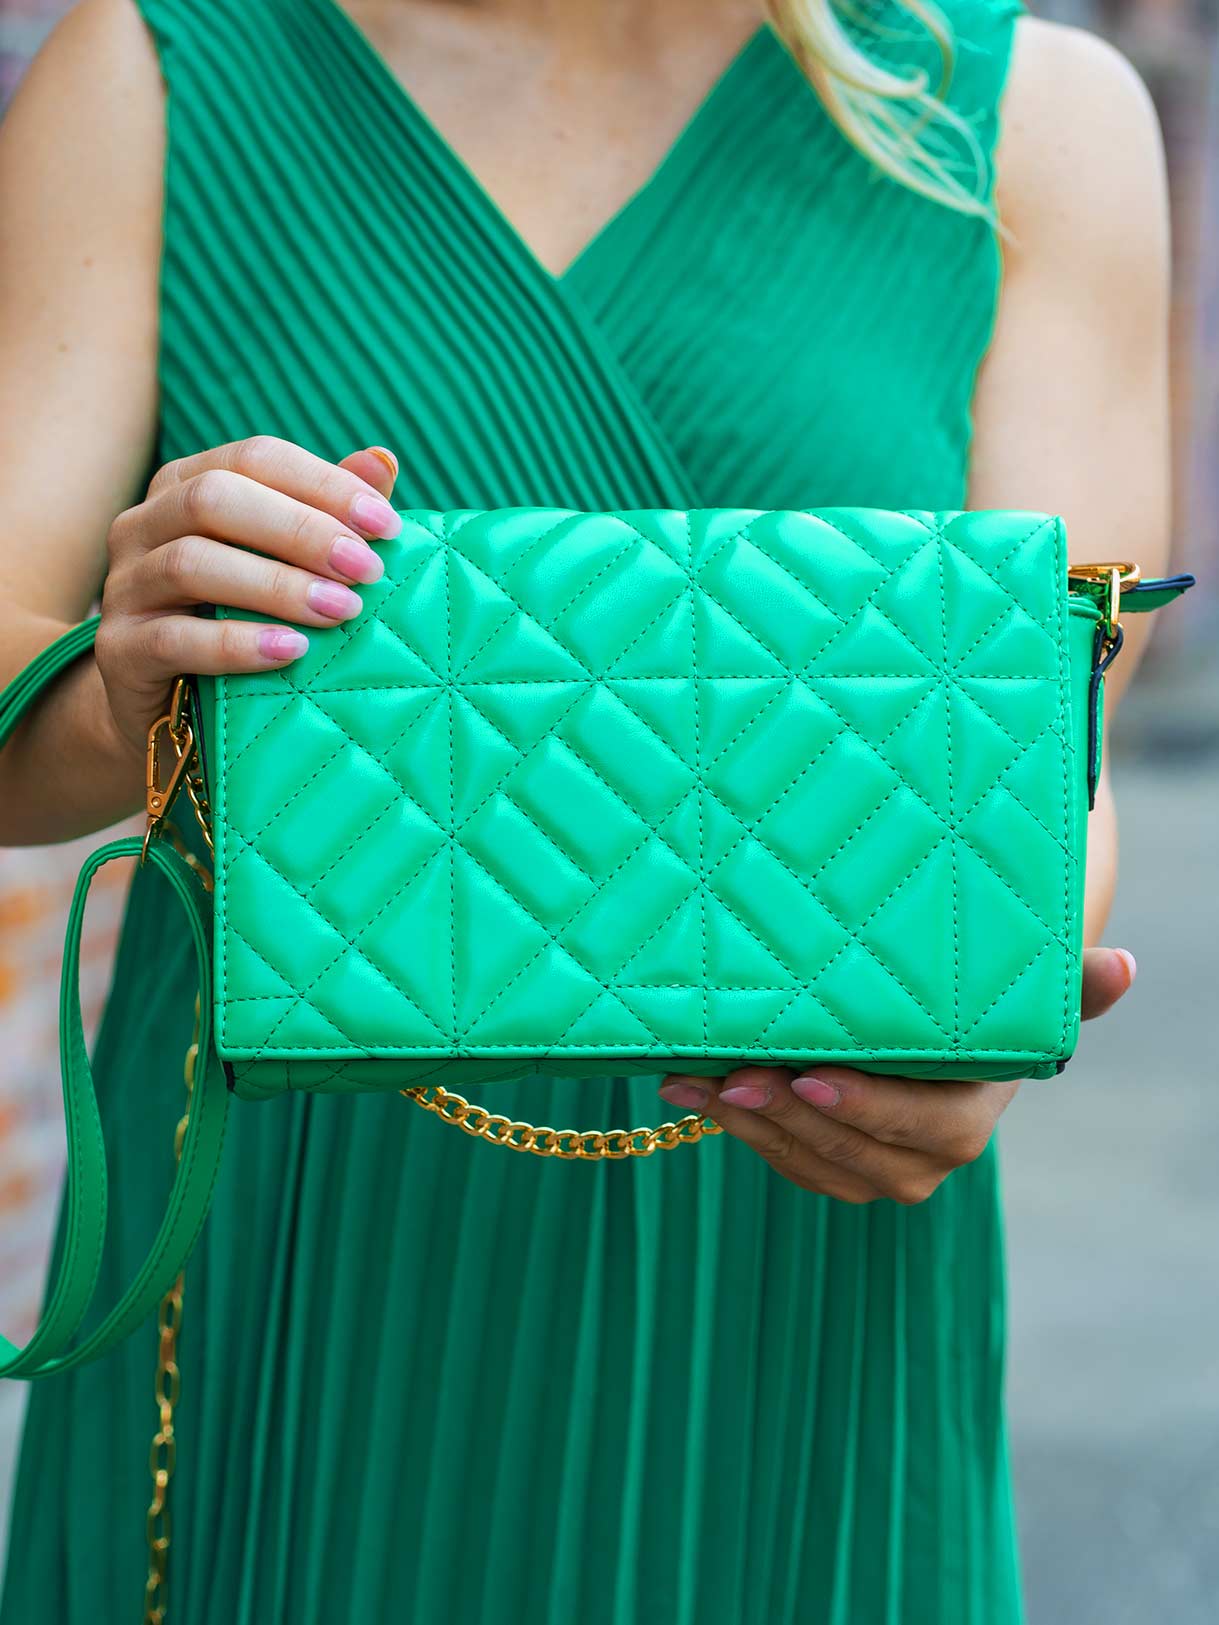 Zelená kabelka Samantha s nastavitelným popruhem